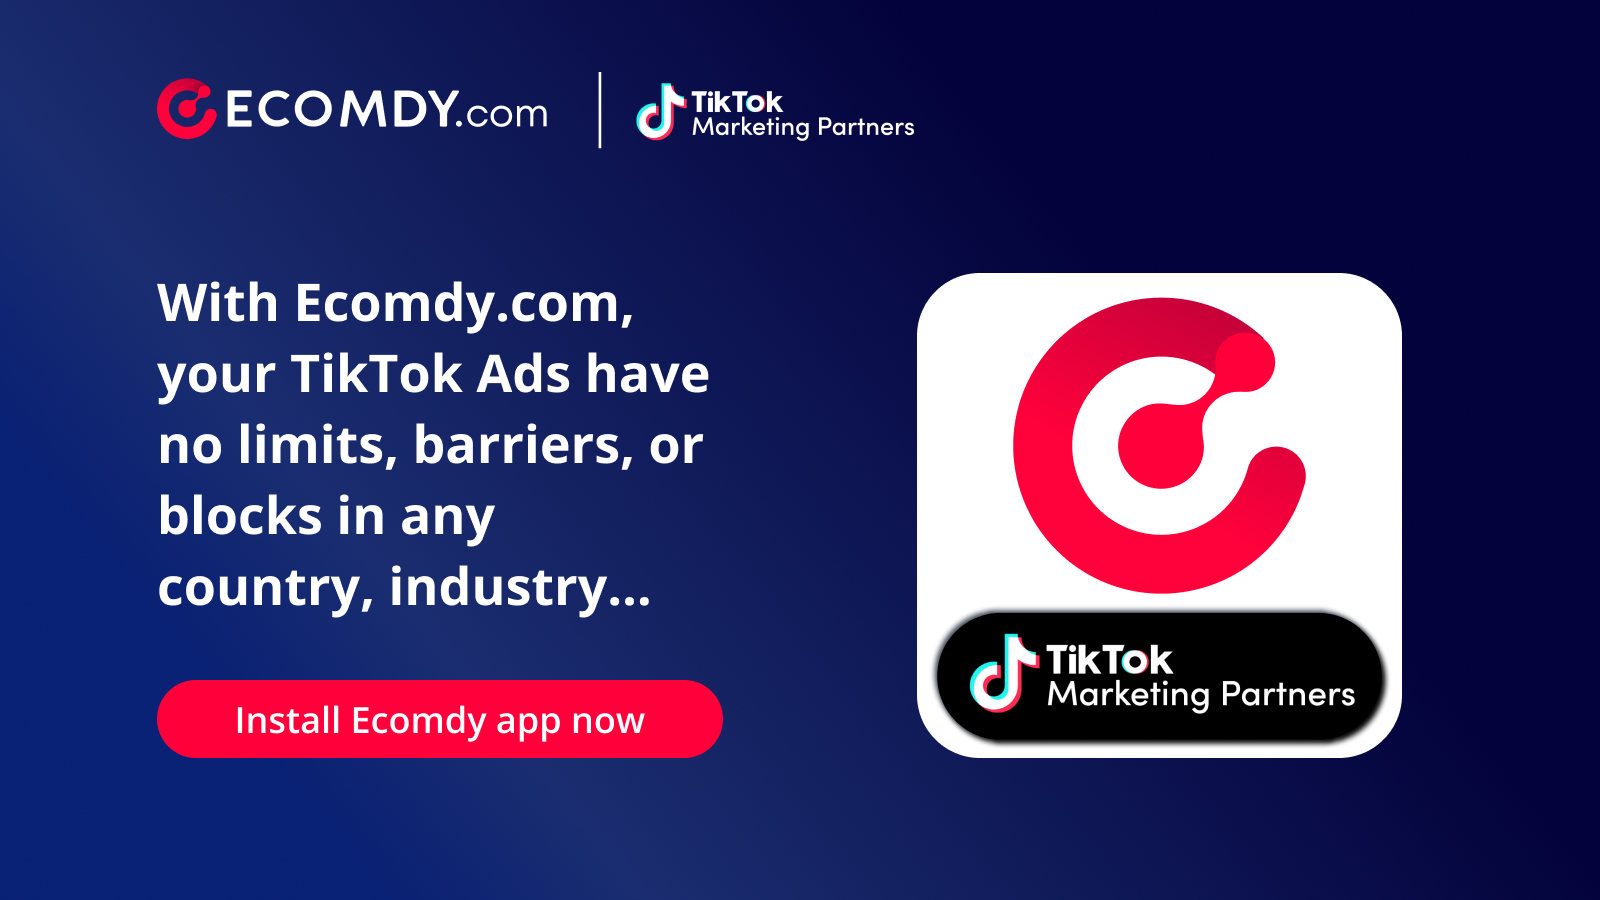 Ecomdy.com - Socio oficial de marketing de TikTok